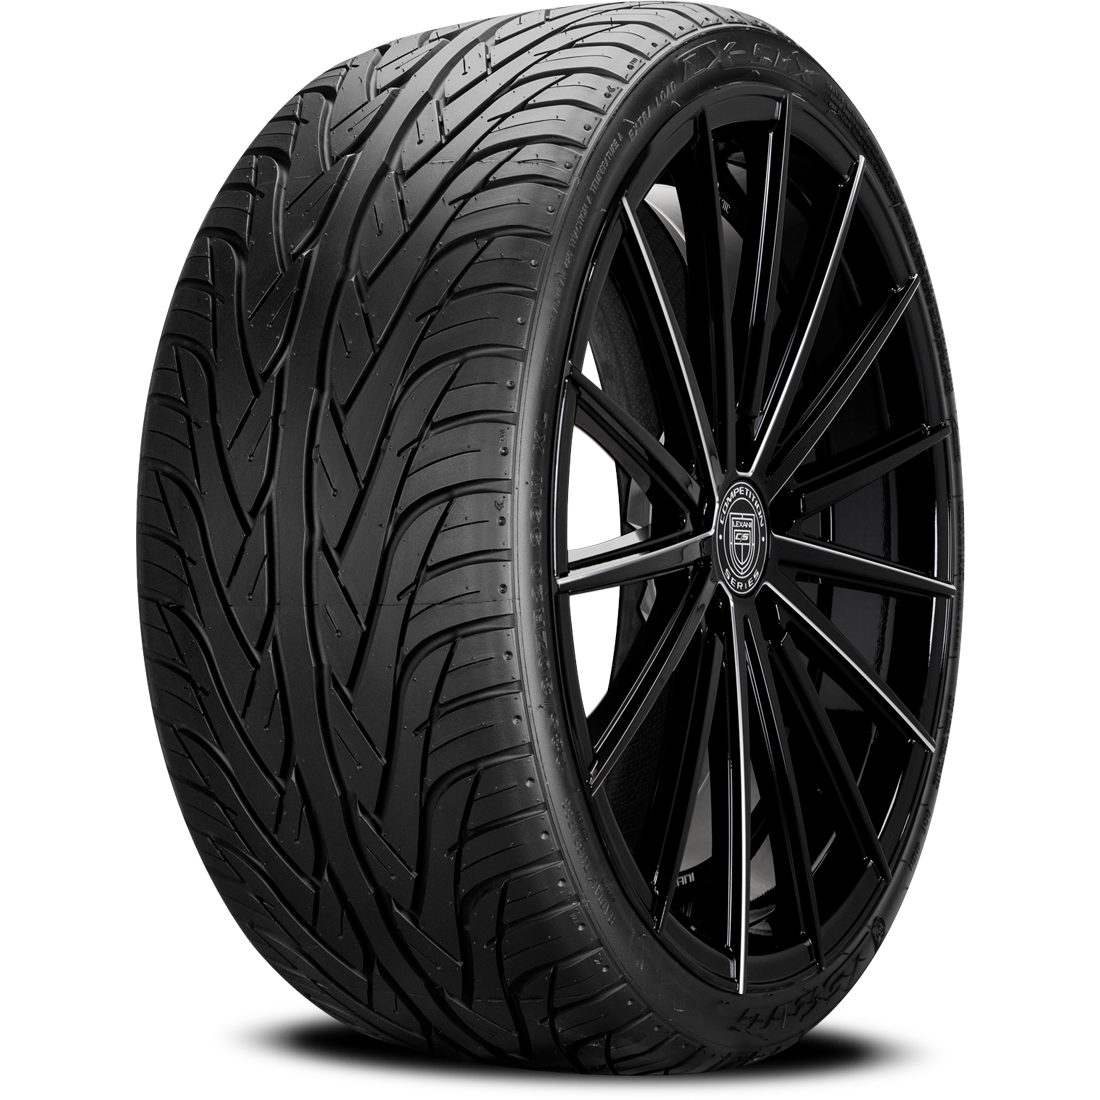 LEXANI LX-SIX II 285/30ZR20 (26.8X11.4R 20) Tires